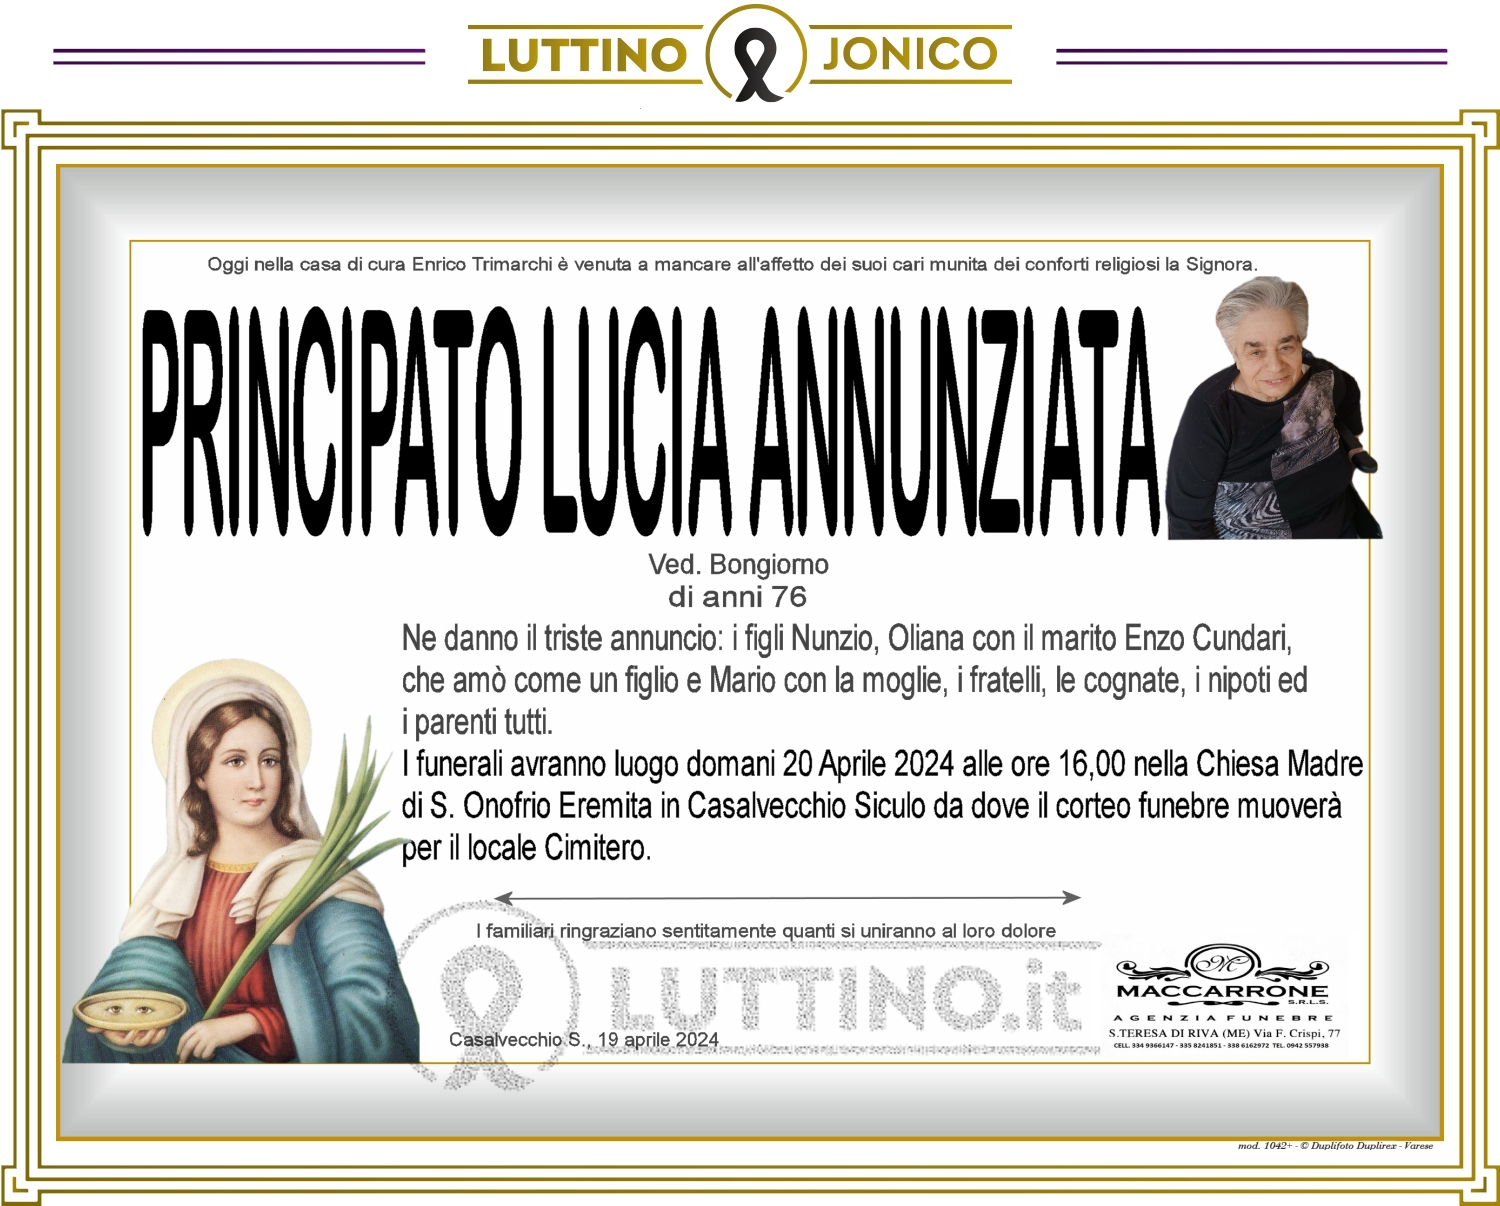 Lucia Annunziata Principato